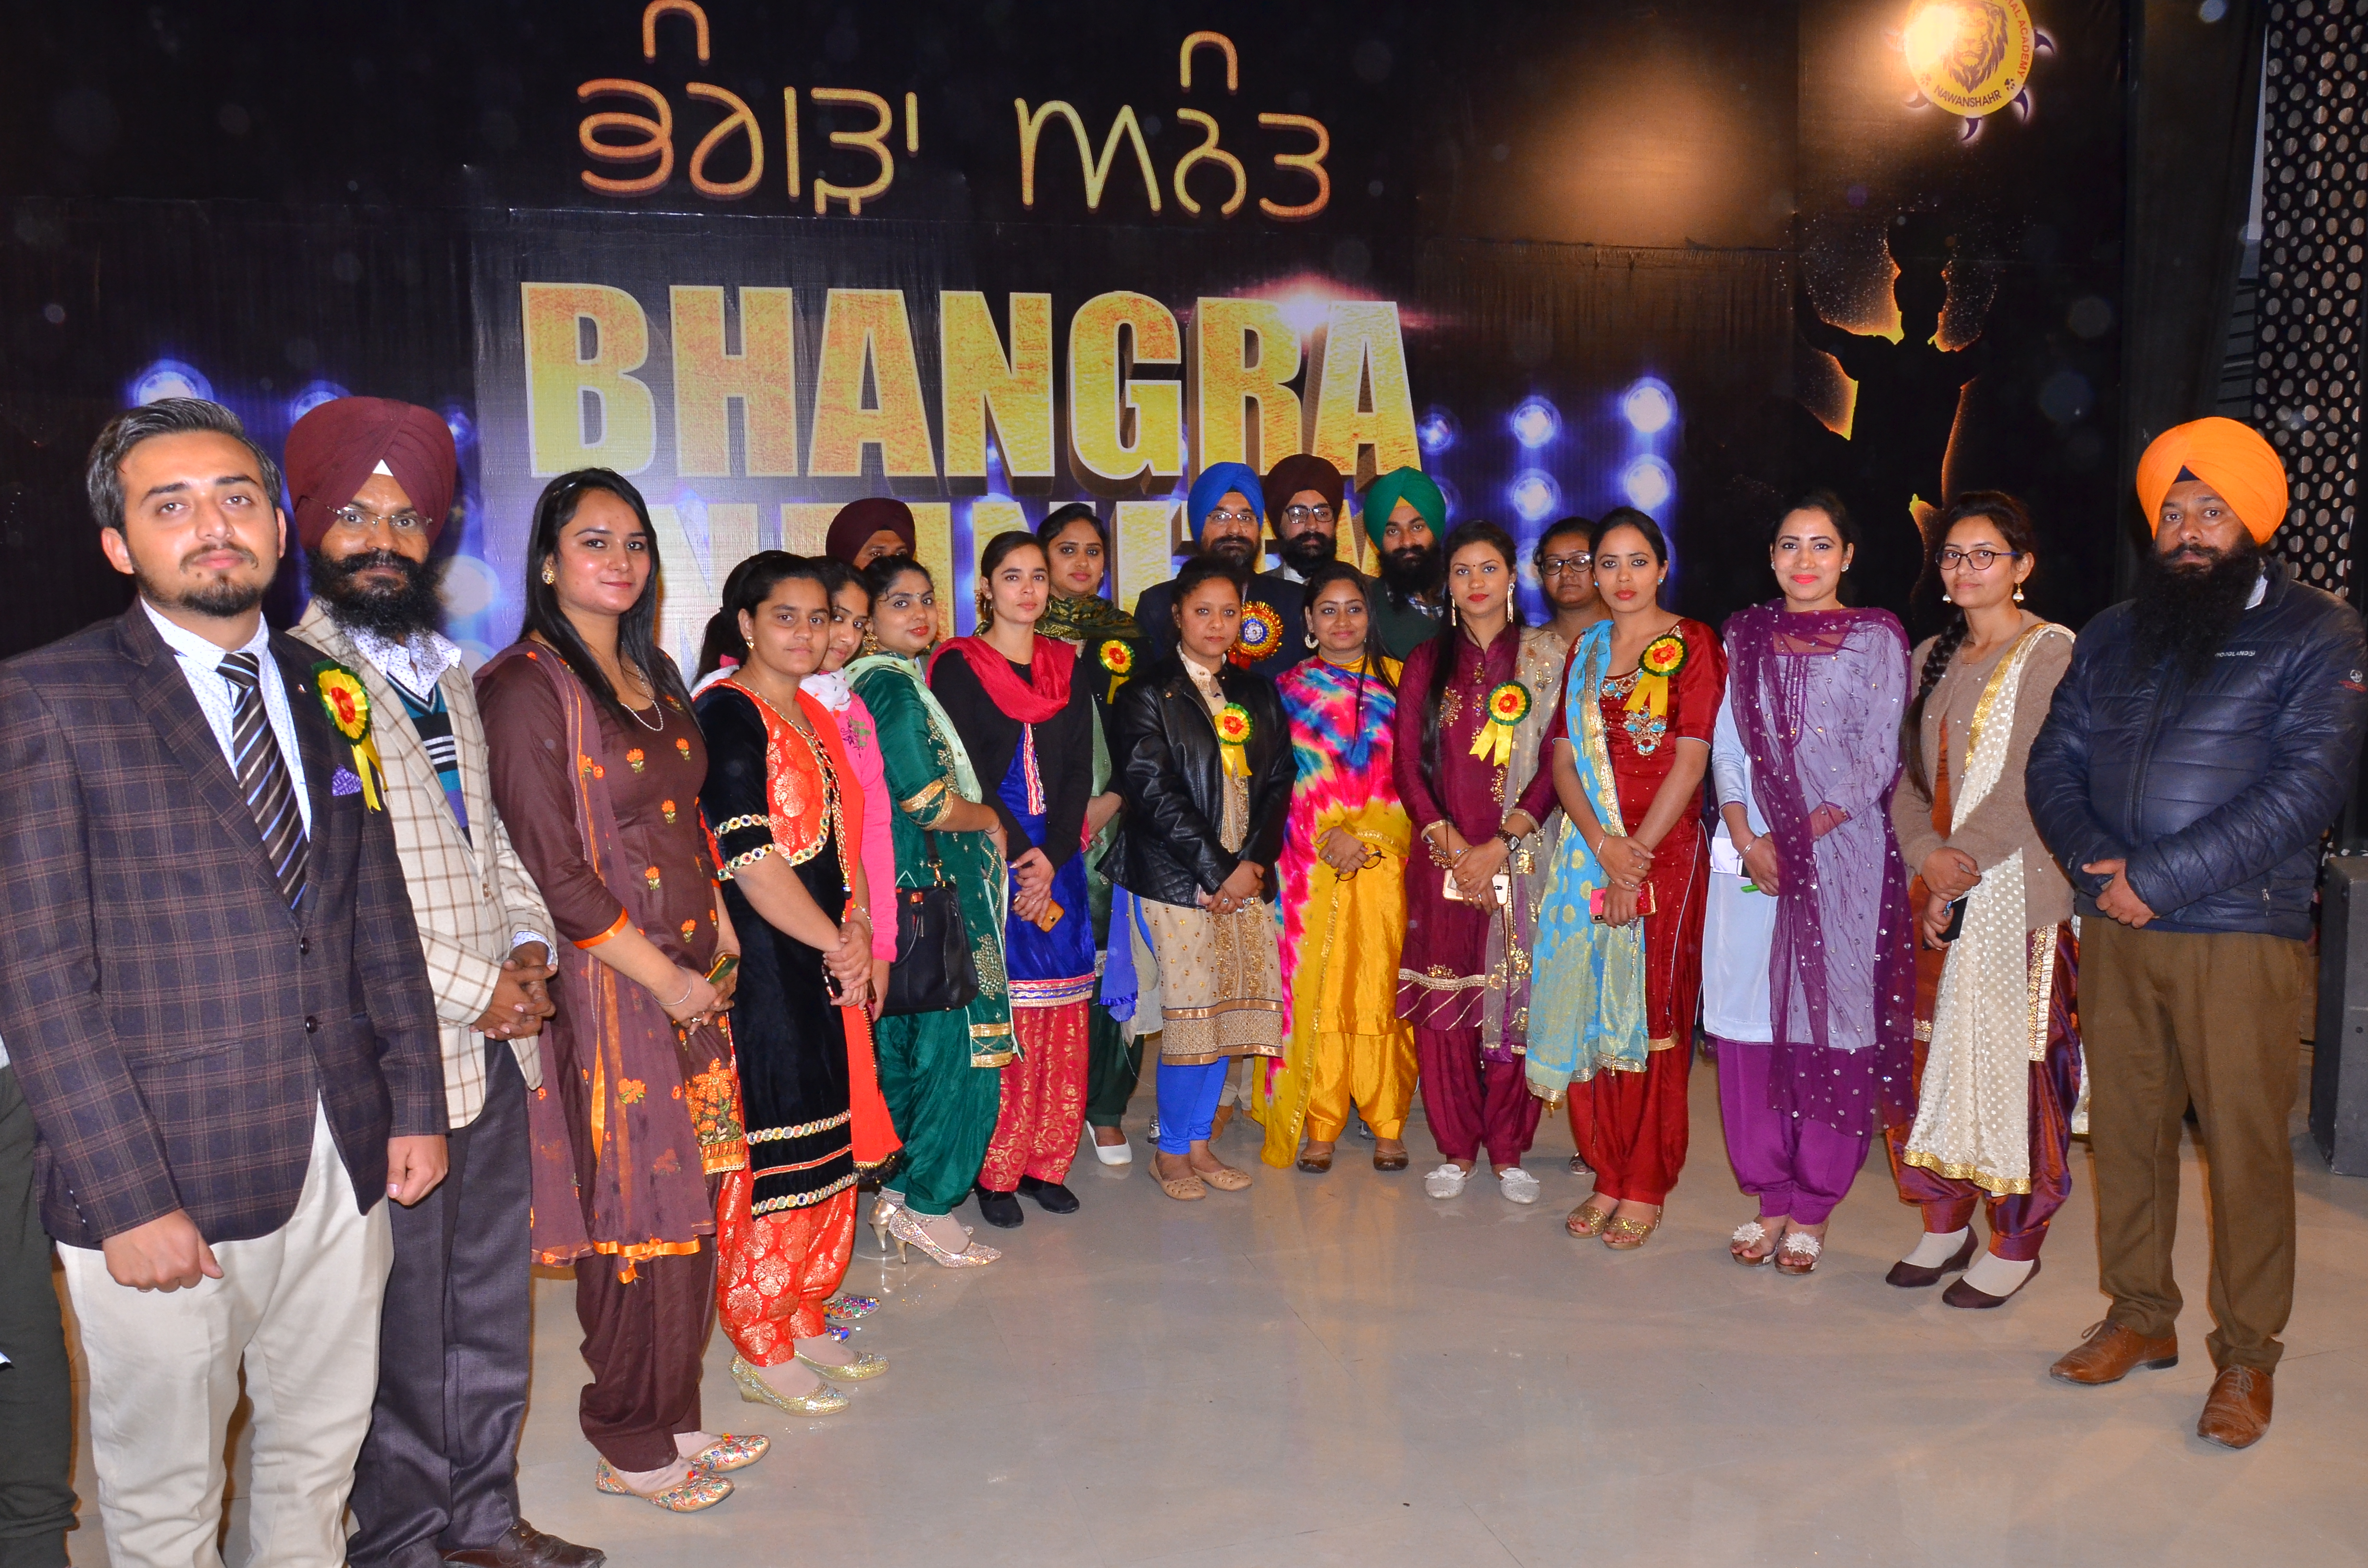 Bhangra Festival >
					
				</div>
				<div class=